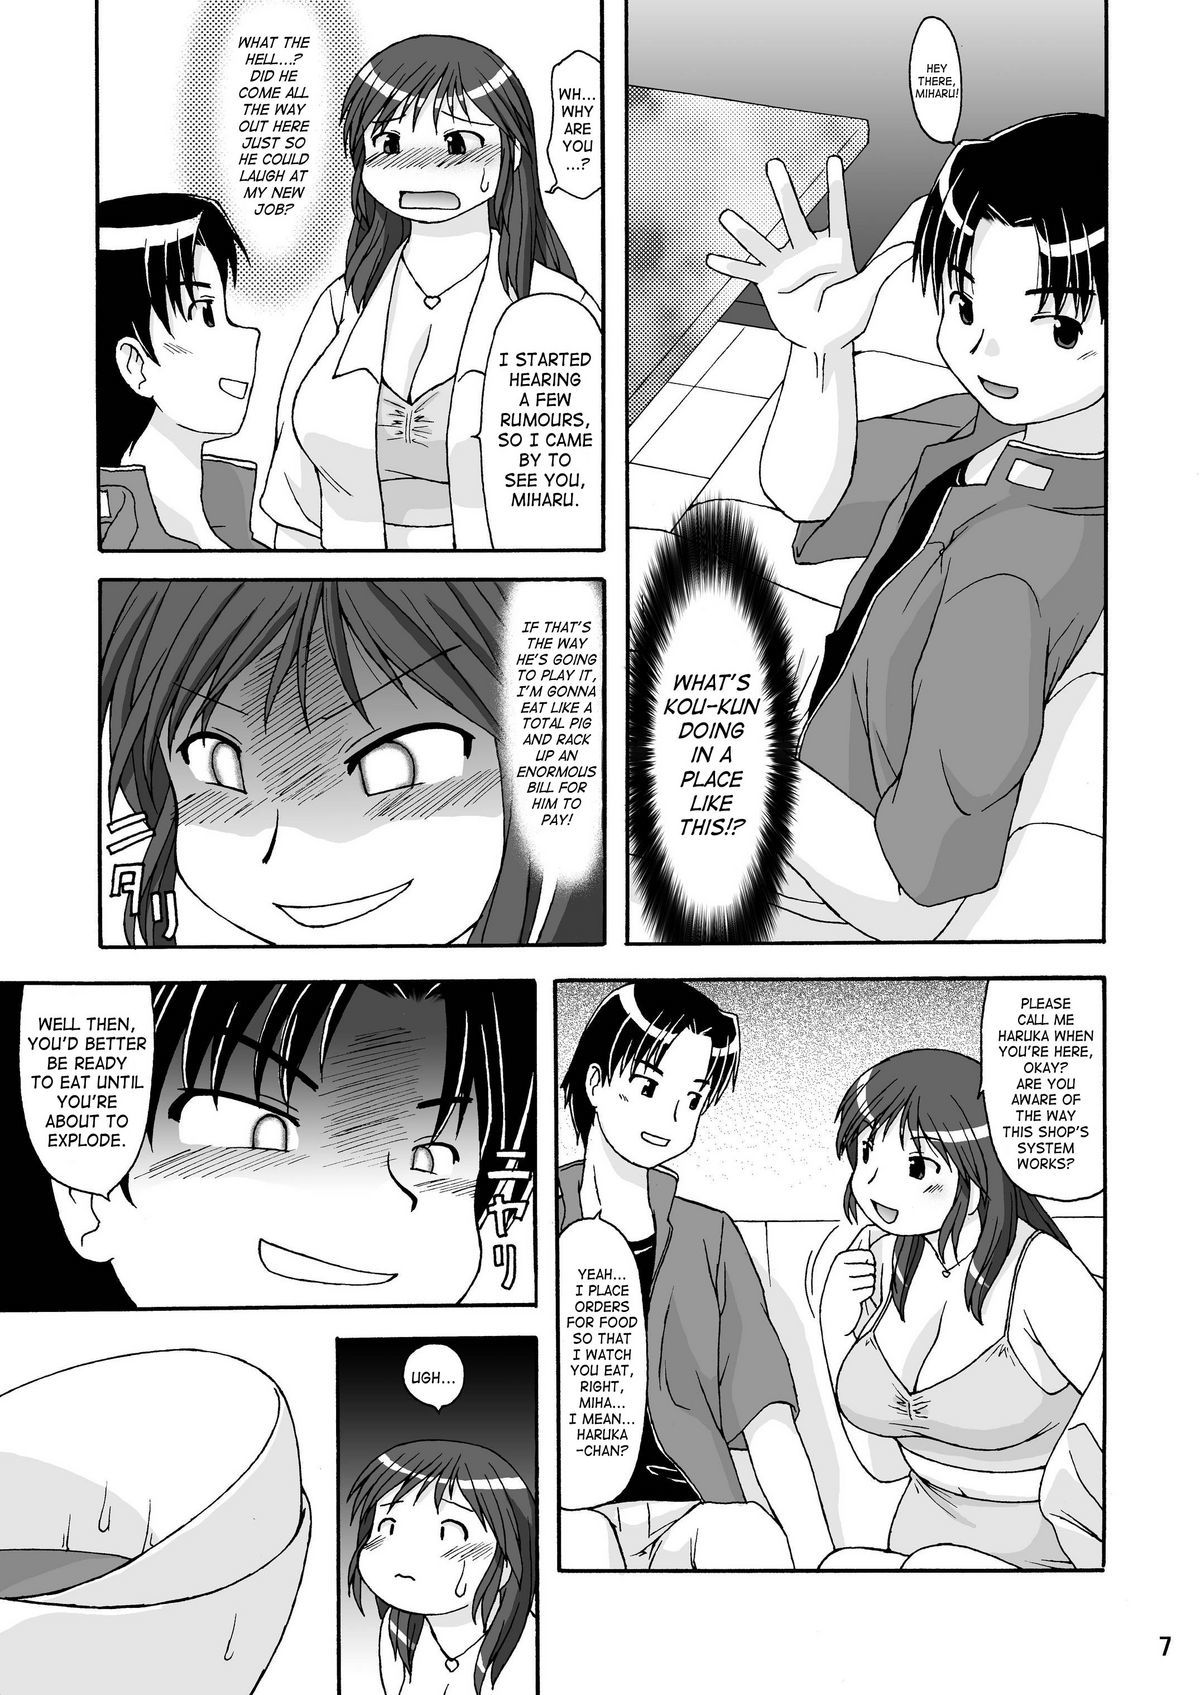 RIGHT STUFF original 5 hentai manga